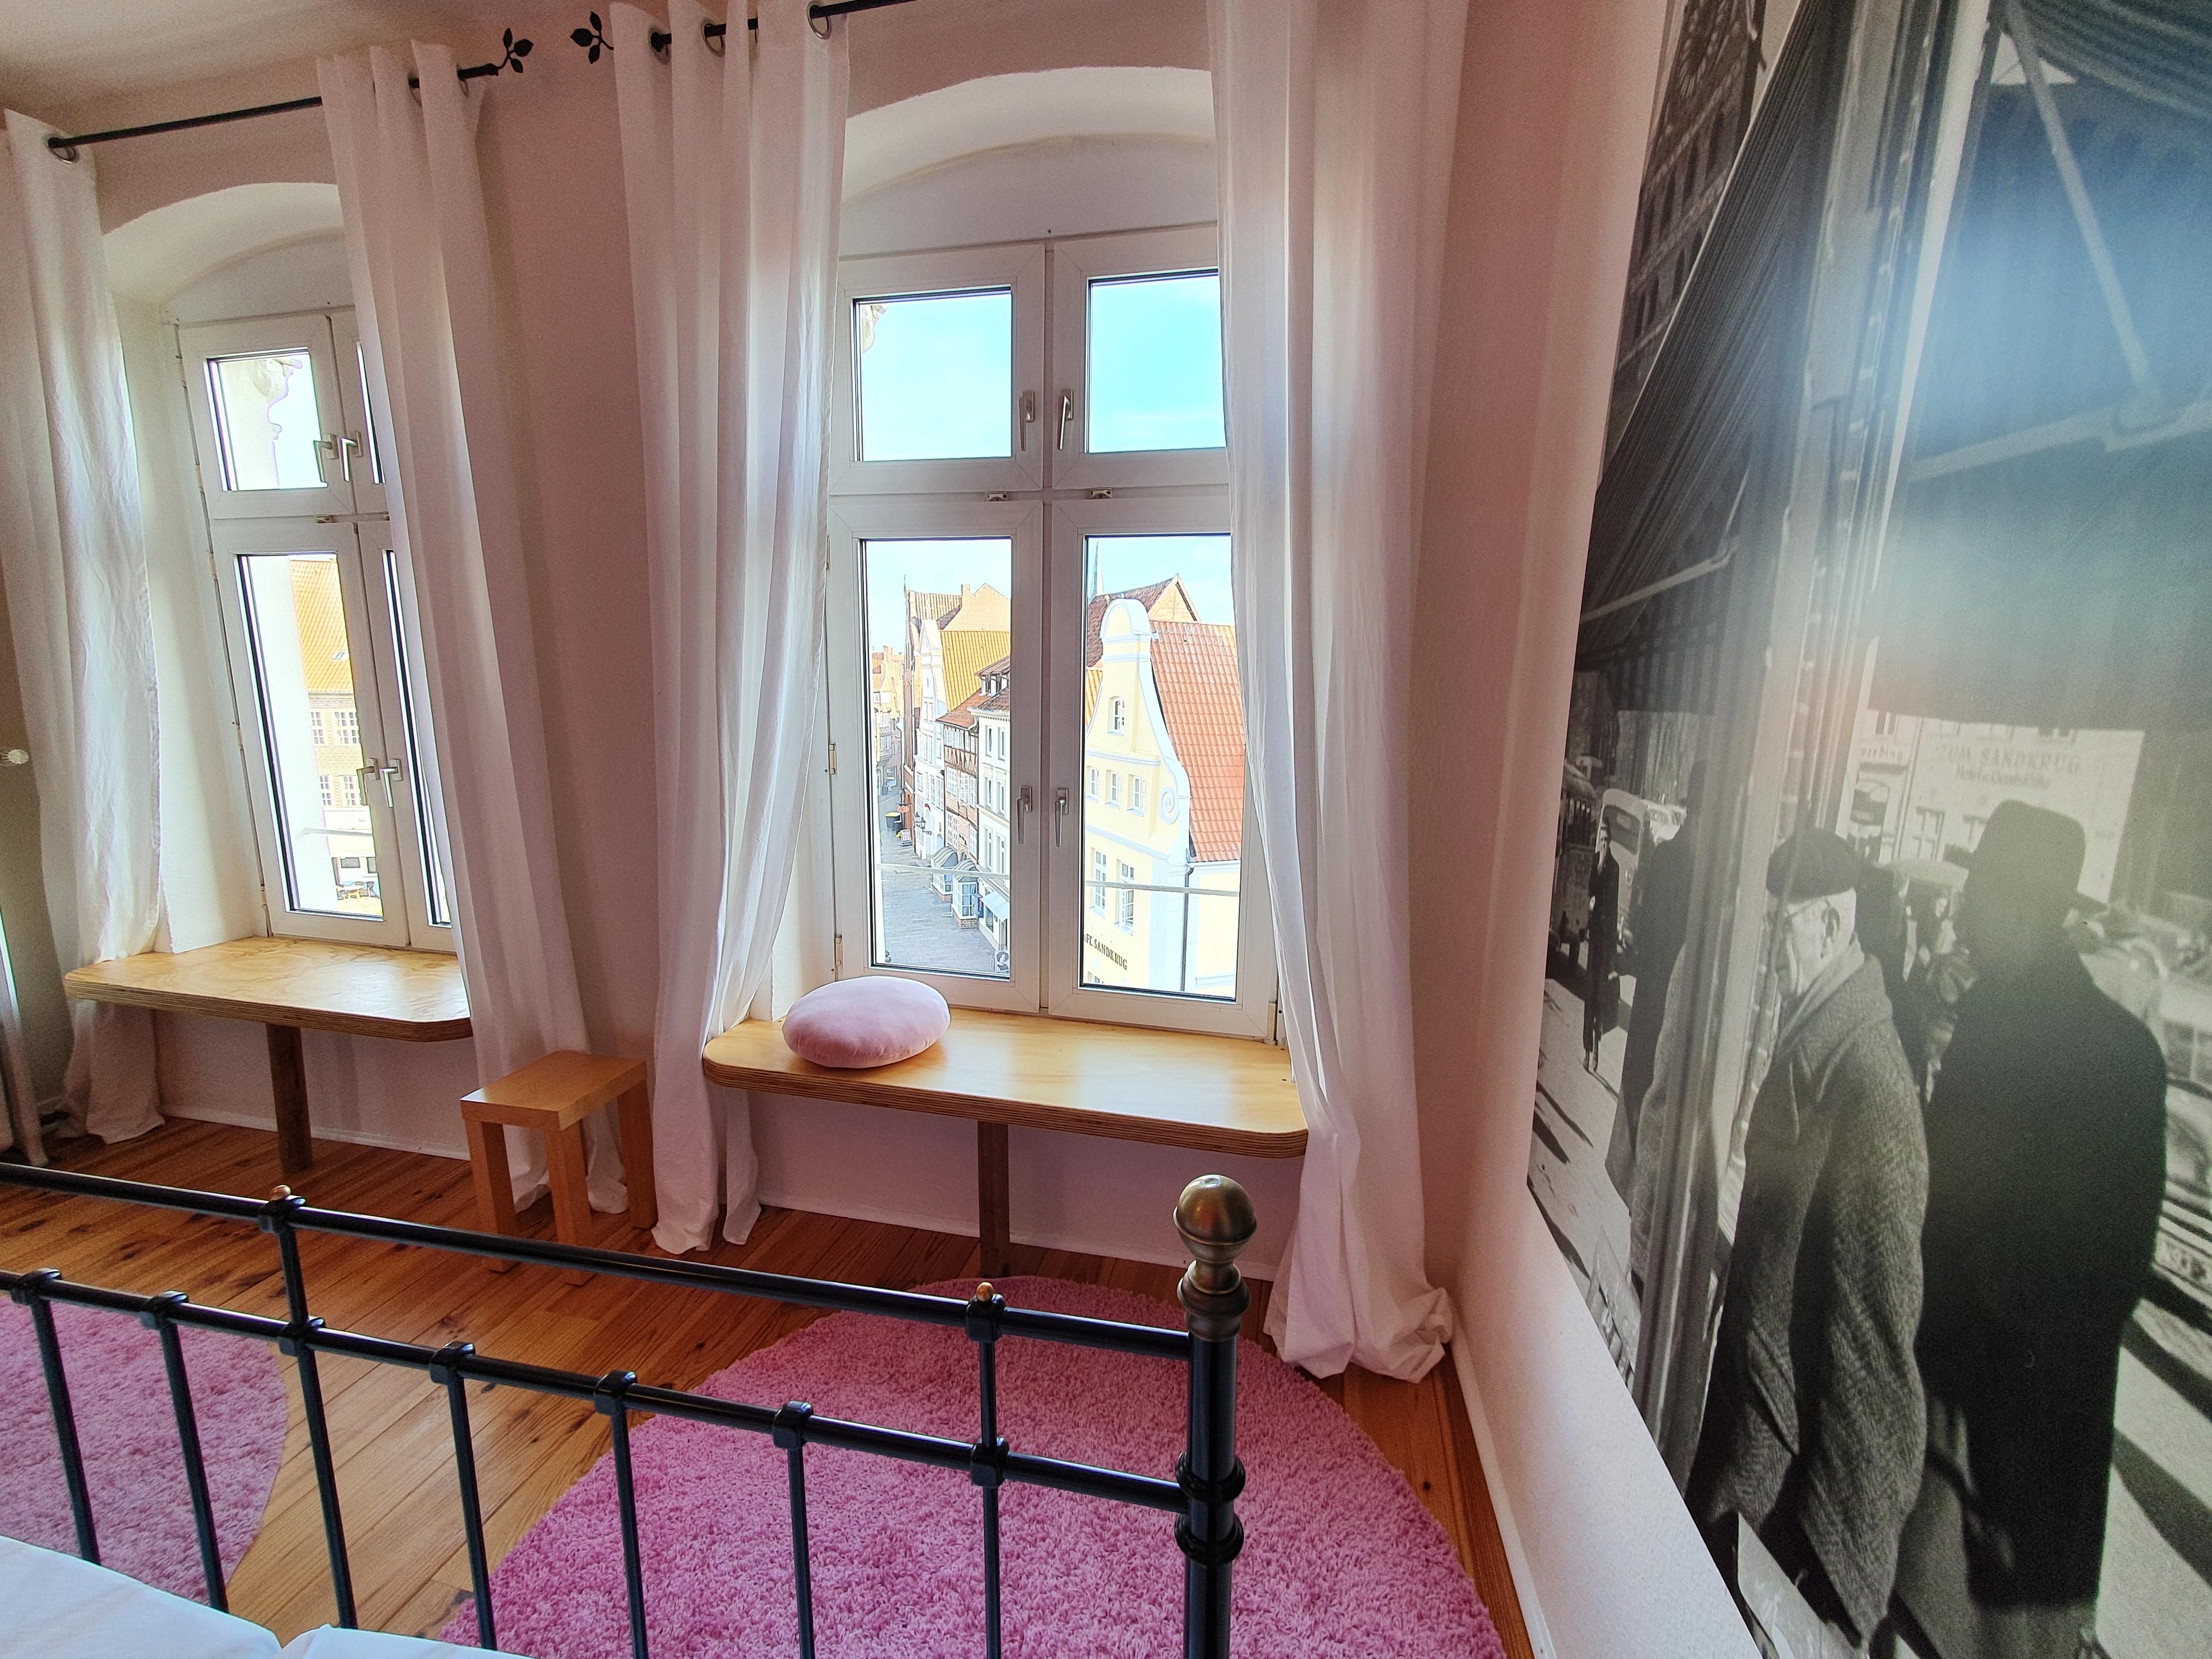 Historische Lüneburgfotos hängen im Großformat in den Zimmern der zweiten Etage.